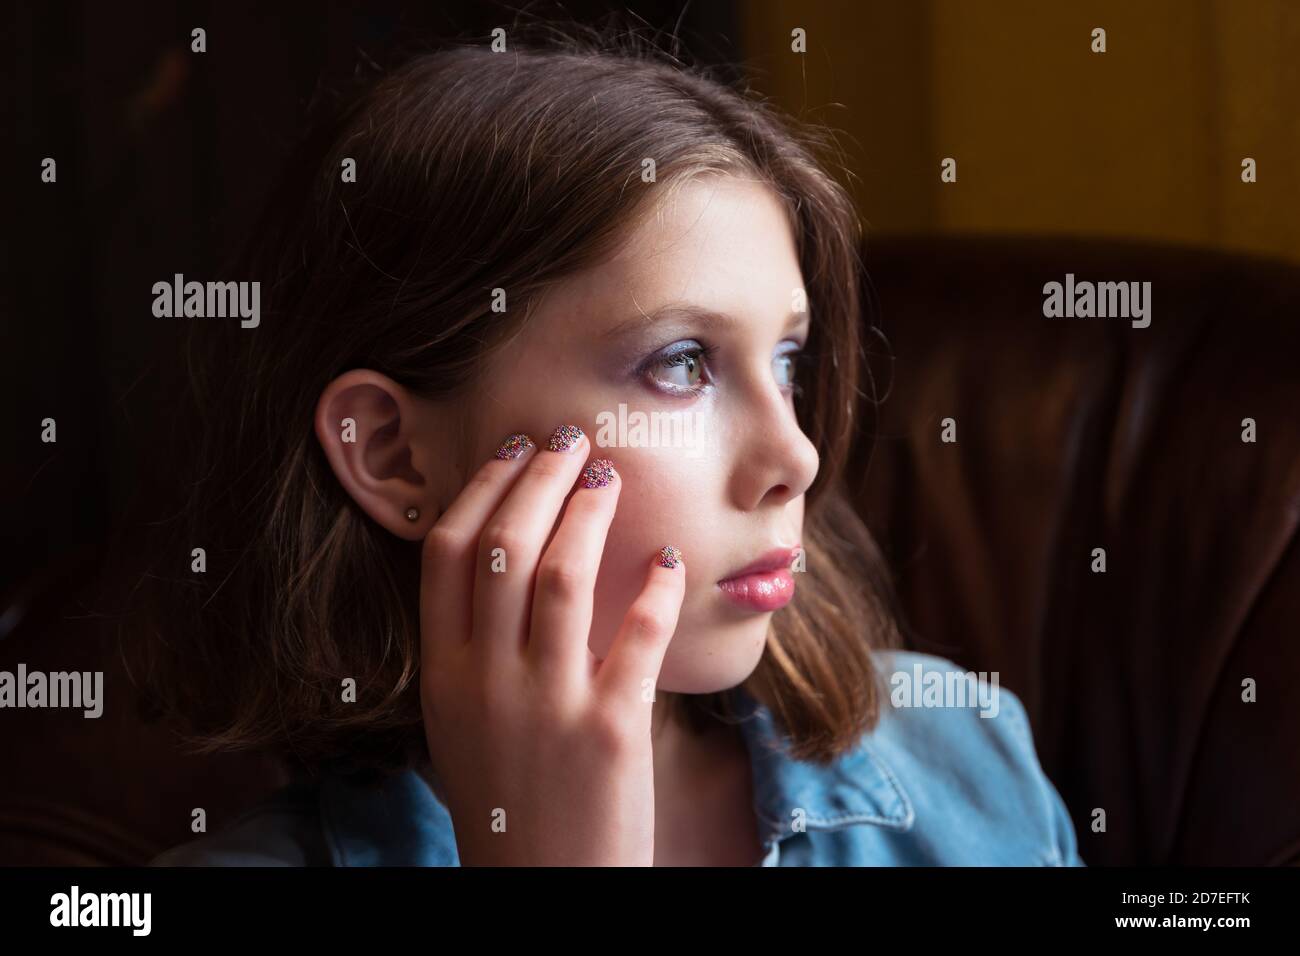 Un retrato natural de una adolescente o adolescente con la mano en la cara se sentó en un sillón, mirando contemplativo Foto de stock